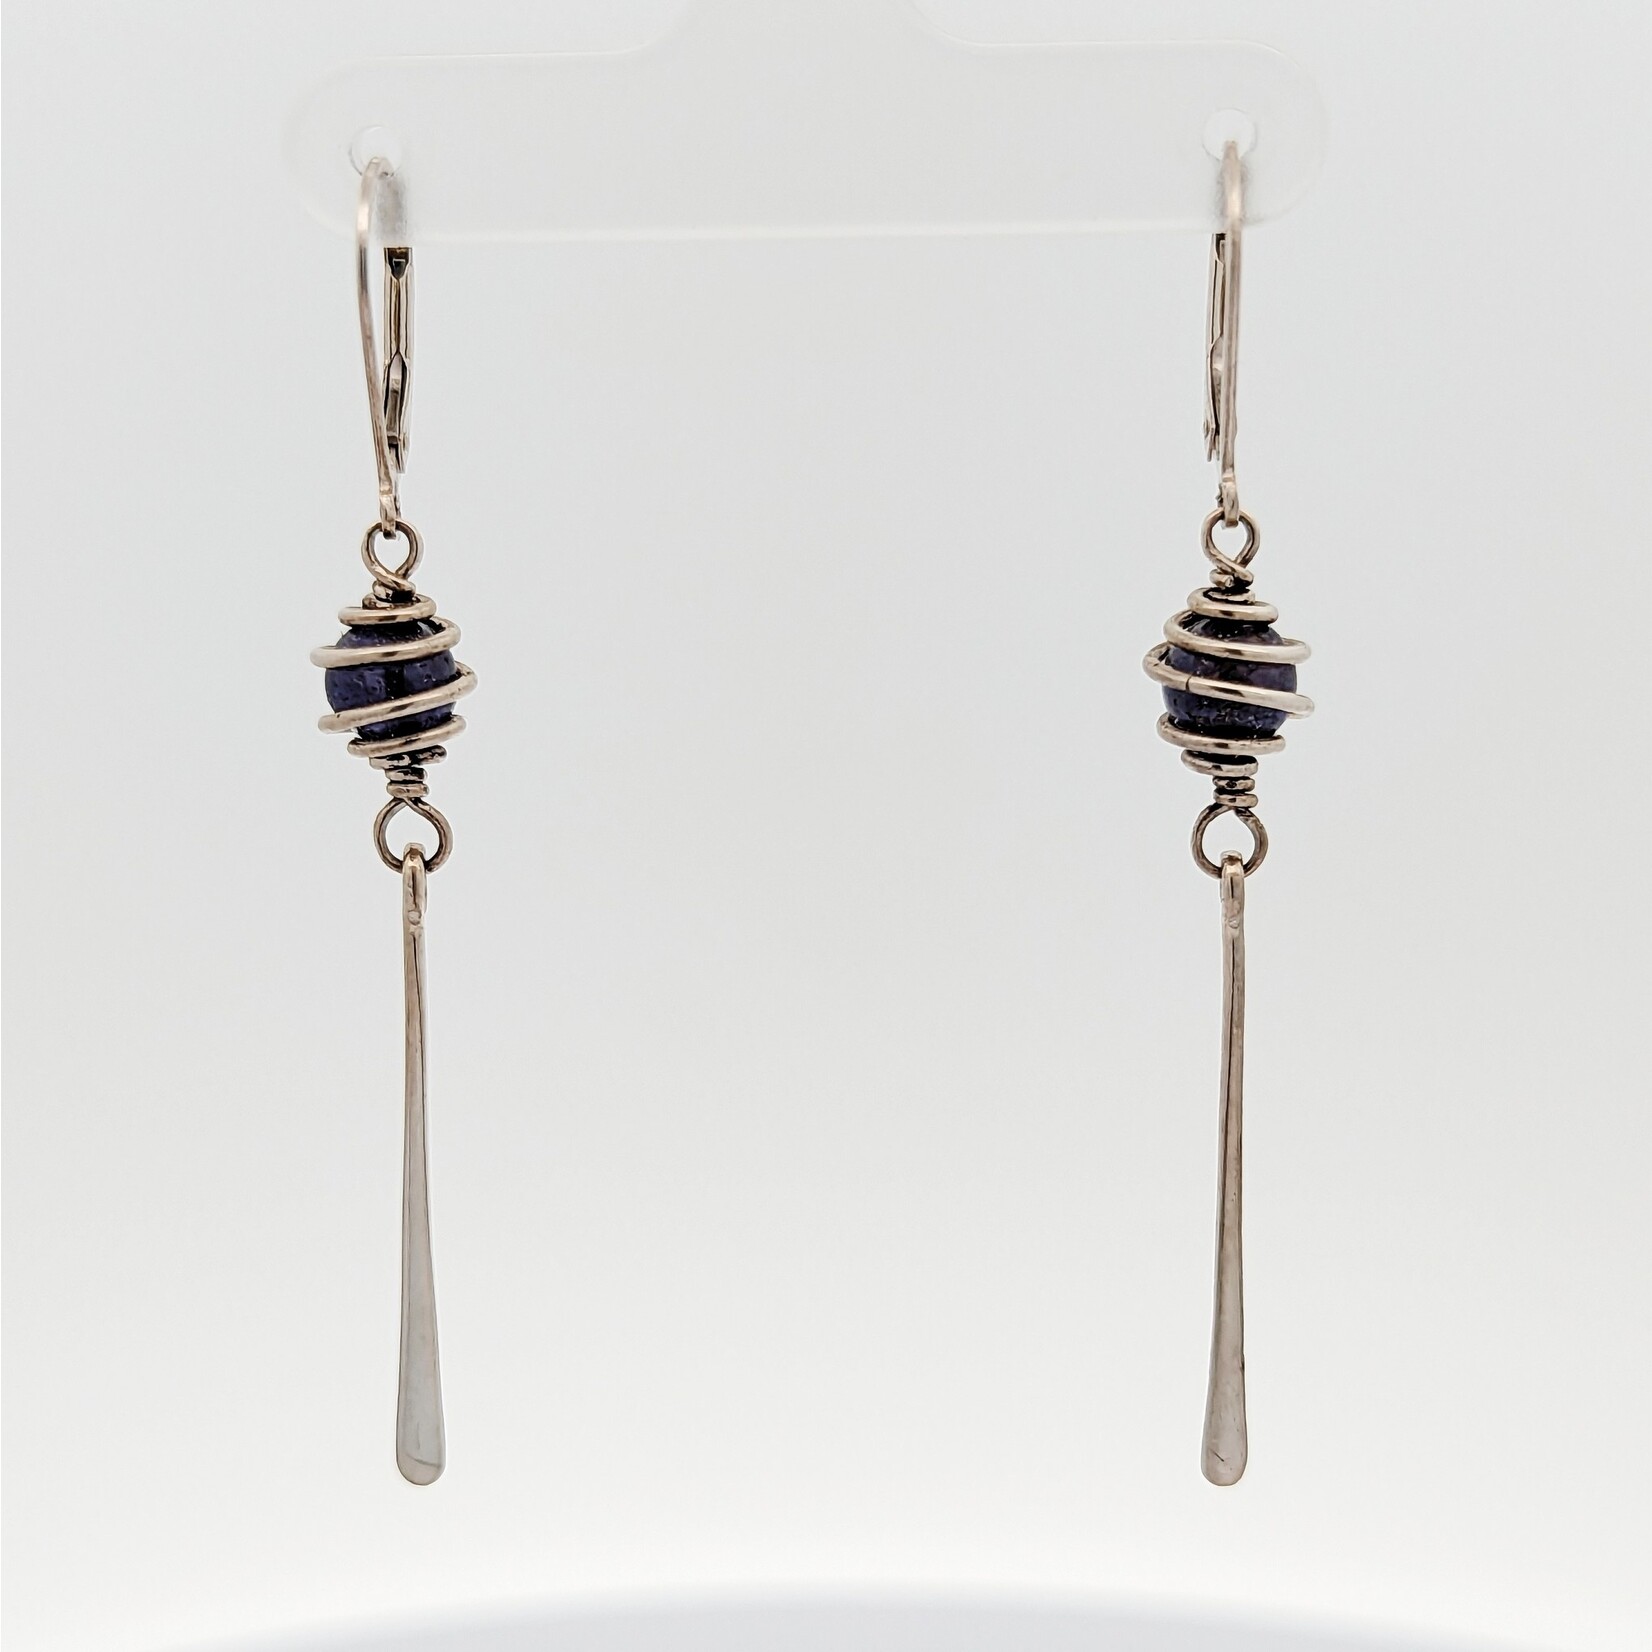 Modern Heirloom® Elegant Drop Sterling & Bead Earrings - Assorted